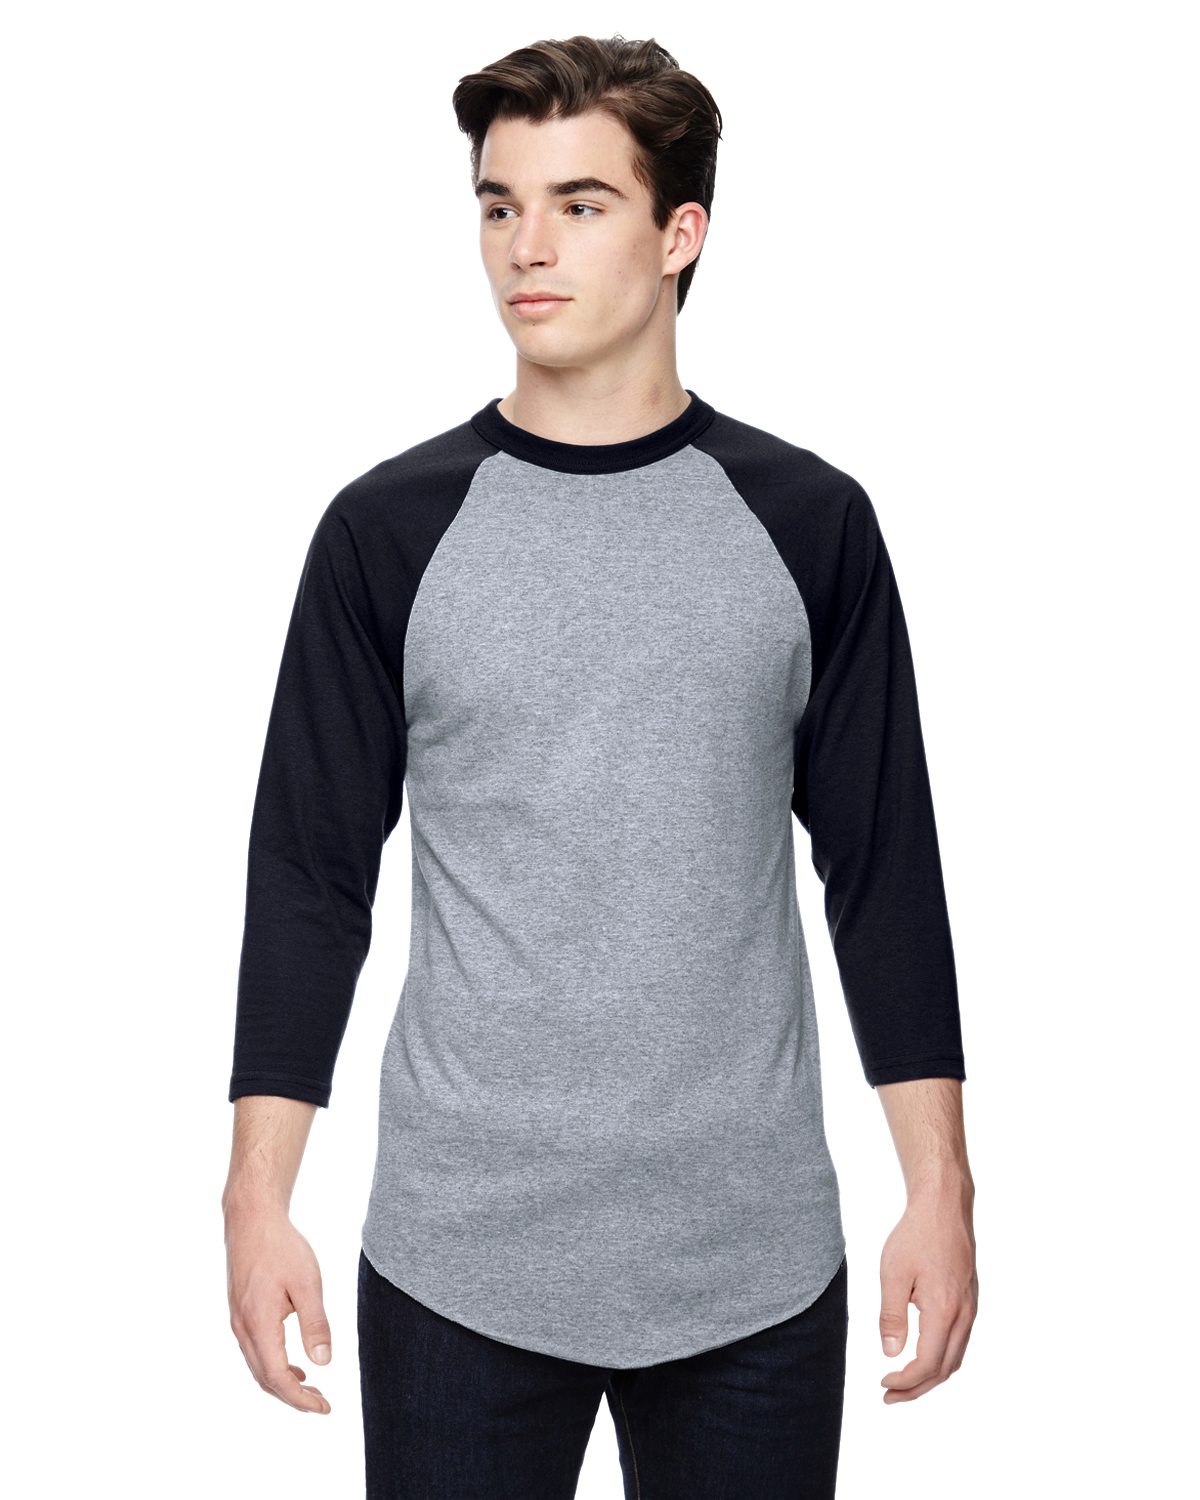 NEW Augusta Sportswear Men's 3/4 Sleeve Baseball Jersey S-XL T-Shirt R ...